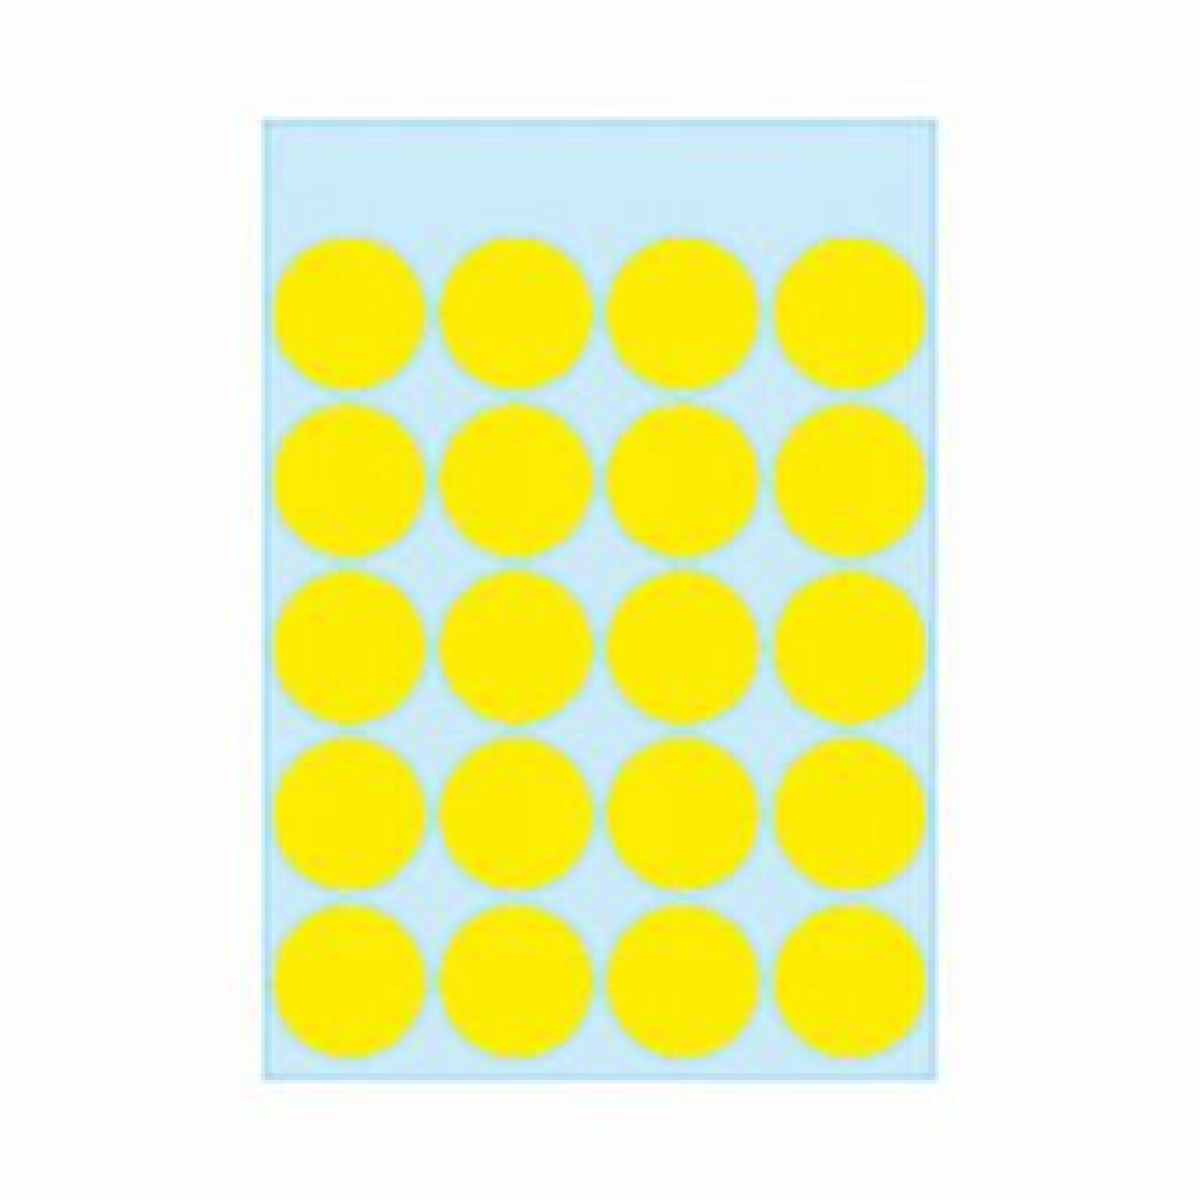 HermaEtikett Markierungspunkt 19mmD 100ST gelb haftend 1871Artikel-Nr: 4008705018715